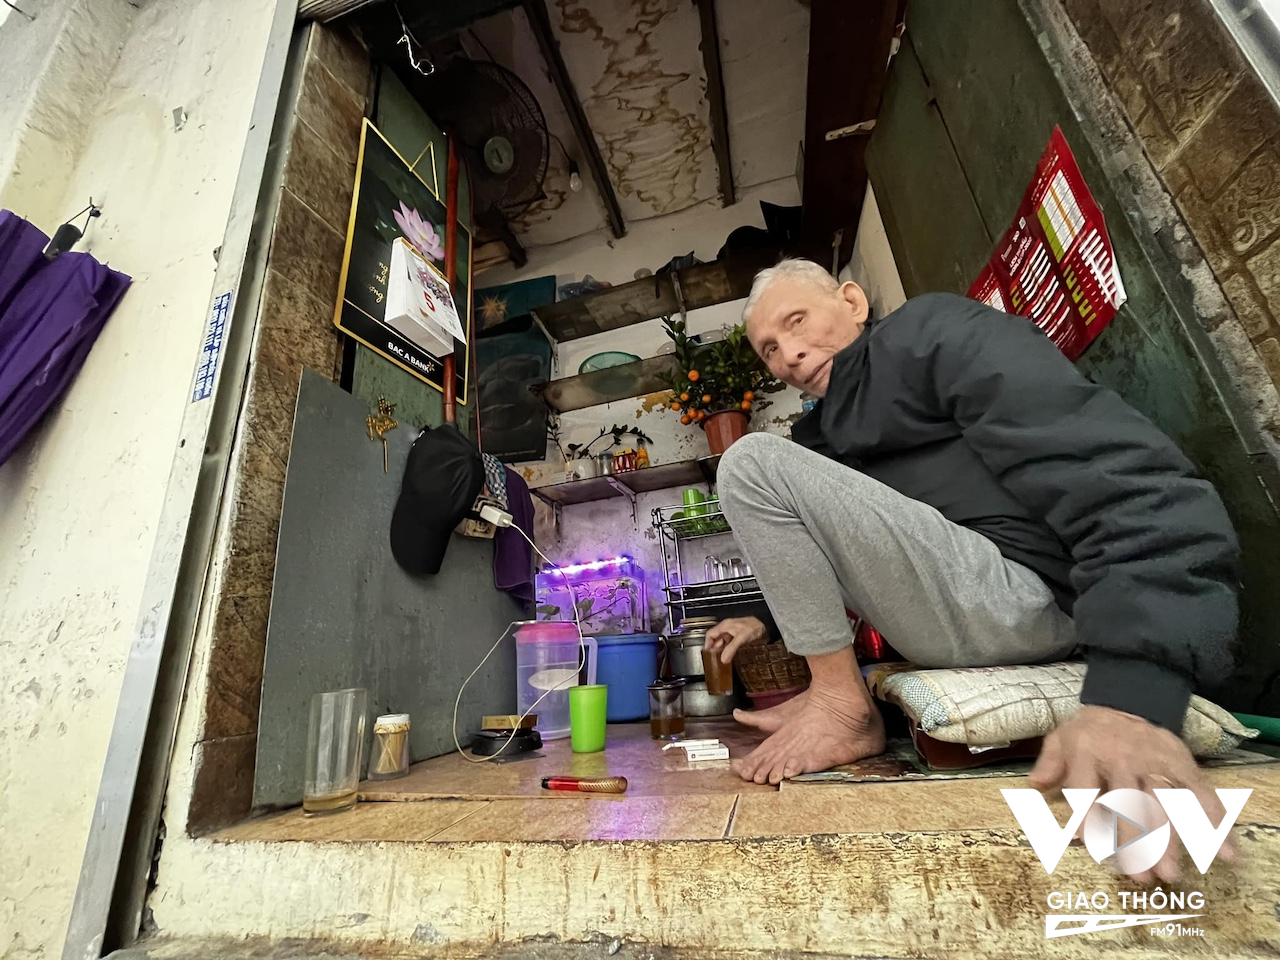 Cụ ông tận dụng một góc căn nhà trên phố Yên Ninh làm quán bán trà như niềm vui lúc tuổi già...